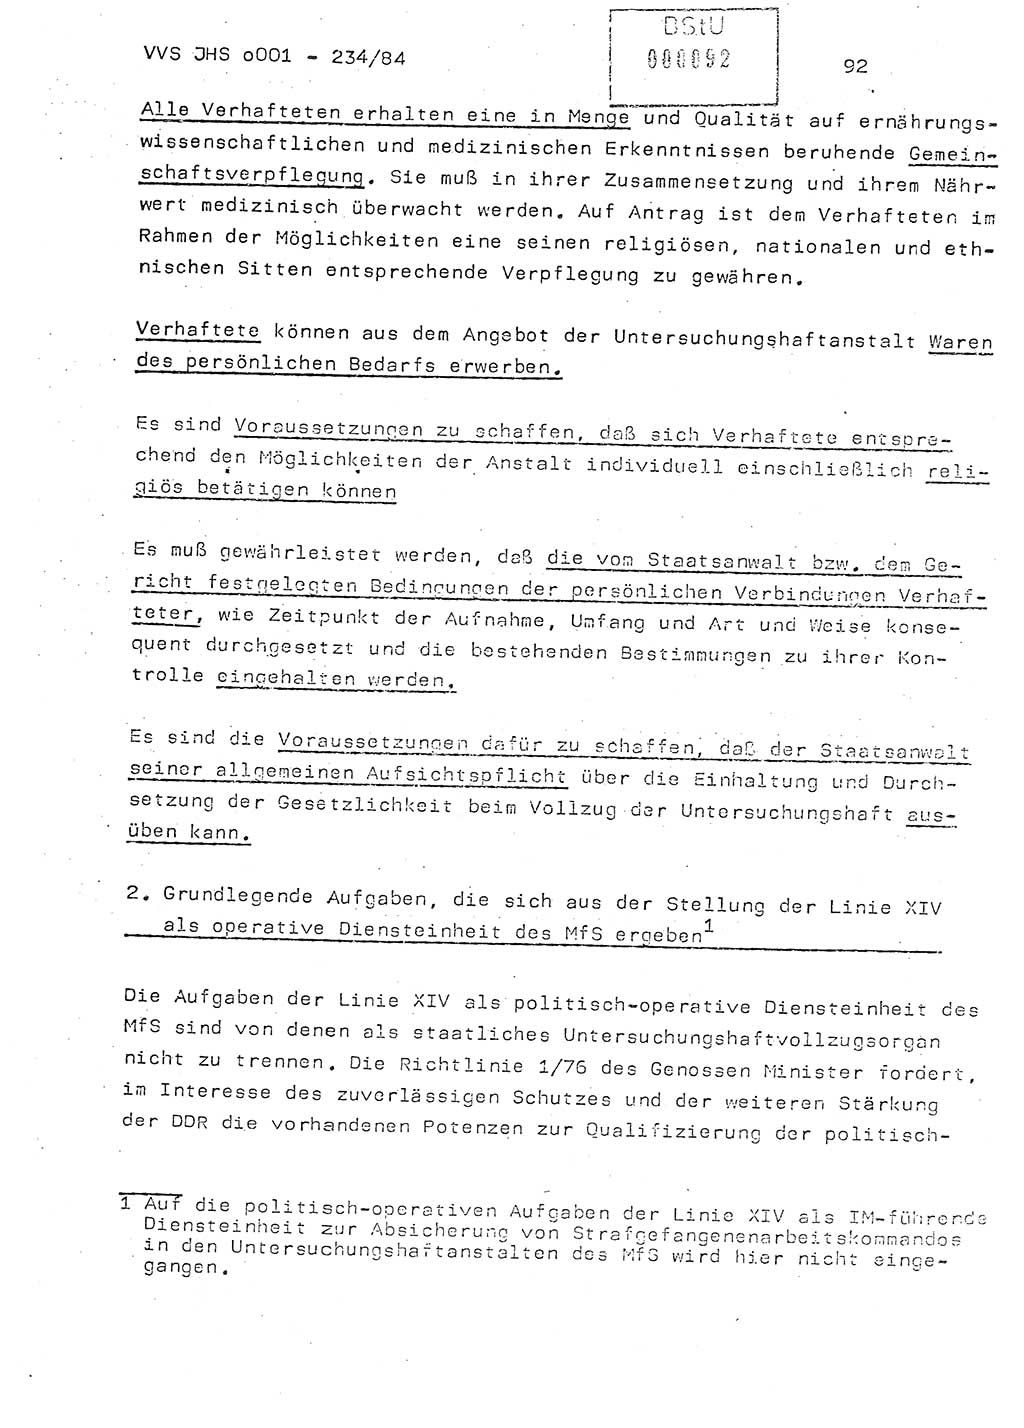 Dissertation Oberst Siegfried Rataizick (Abt. ⅩⅣ), Oberstleutnant Volkmar Heinz (Abt. ⅩⅣ), Oberstleutnant Werner Stein (HA Ⅸ), Hauptmann Heinz Conrad (JHS), Ministerium für Staatssicherheit (MfS) [Deutsche Demokratische Republik (DDR)], Juristische Hochschule (JHS), Vertrauliche Verschlußsache (VVS) o001-234/84, Potsdam 1984, Seite 92 (Diss. MfS DDR JHS VVS o001-234/84 1984, S. 92)